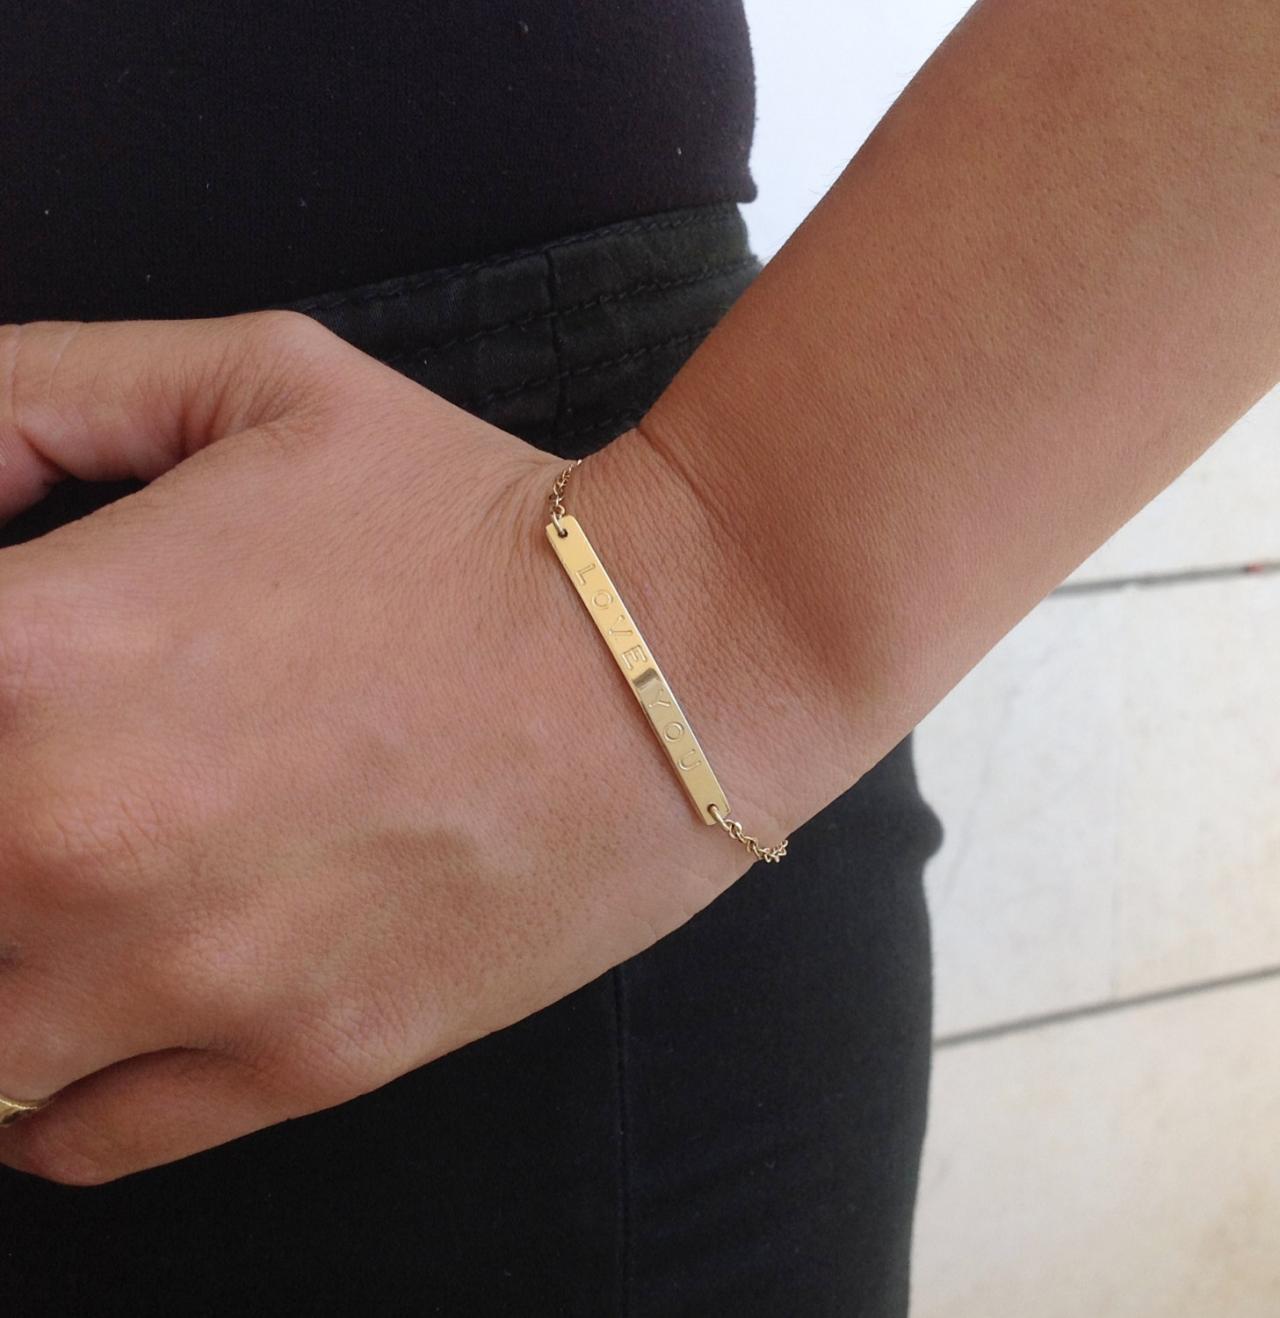 Personalized bracelet- nameplate bracelet - gold nameplate bracelet - custom bar bracelet - gold filled bracelet B020